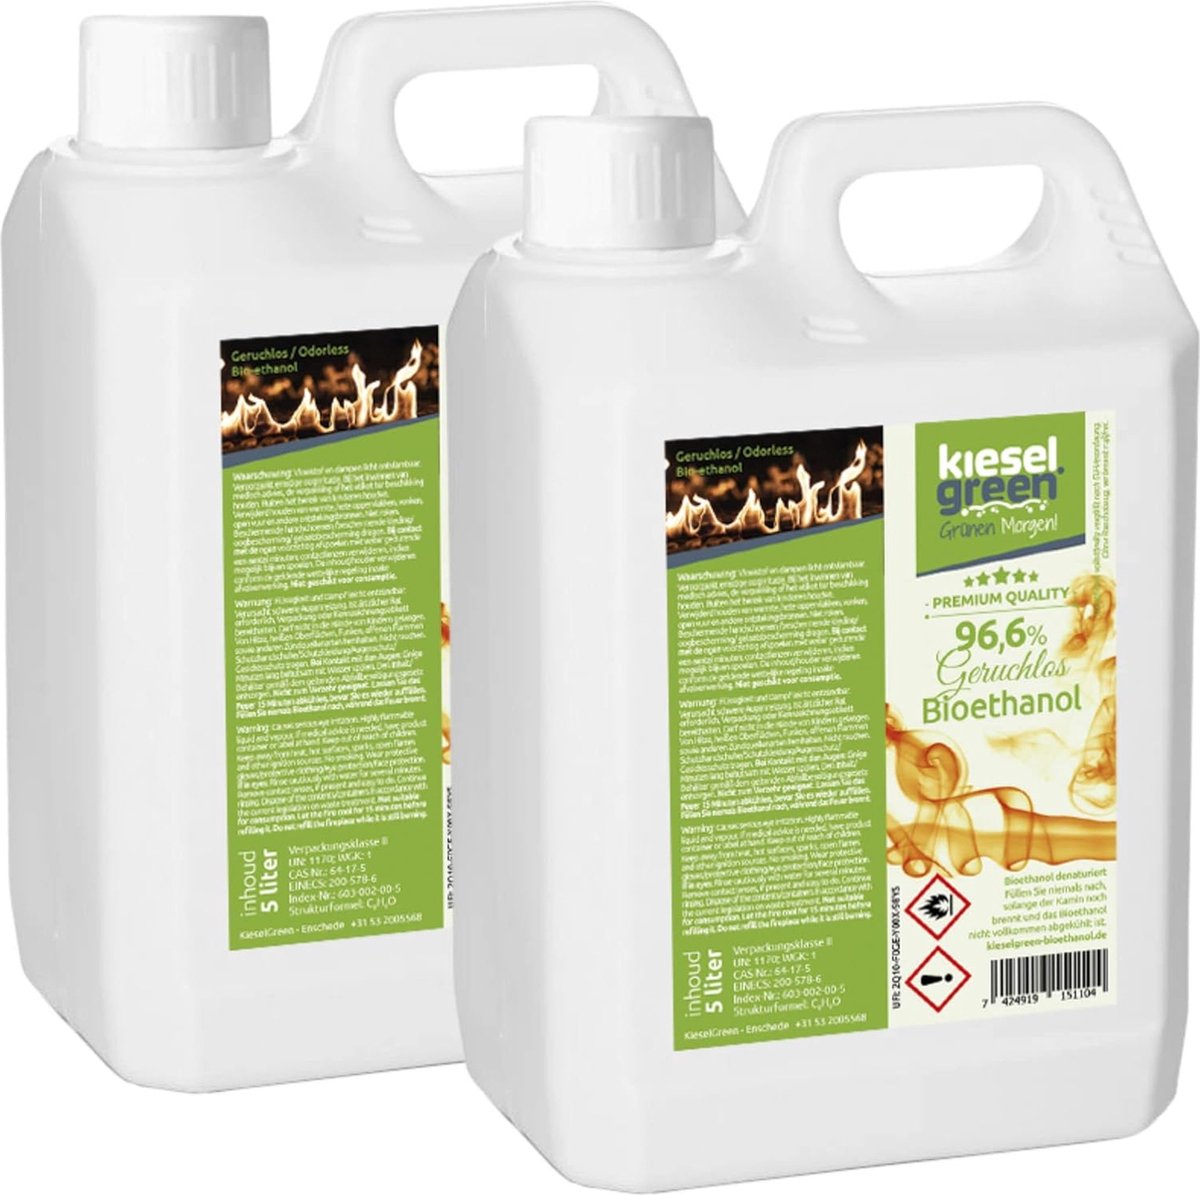 KieselGreen 10 Liter Bio-Ethanol Geurloos - Bioethanol 96.6%, Veilig voor Sfeerhaarden en Tafelhaarden, Milieuvriendelijk - Premium Kwaliteit Ethanol voor Binnen en Buiten